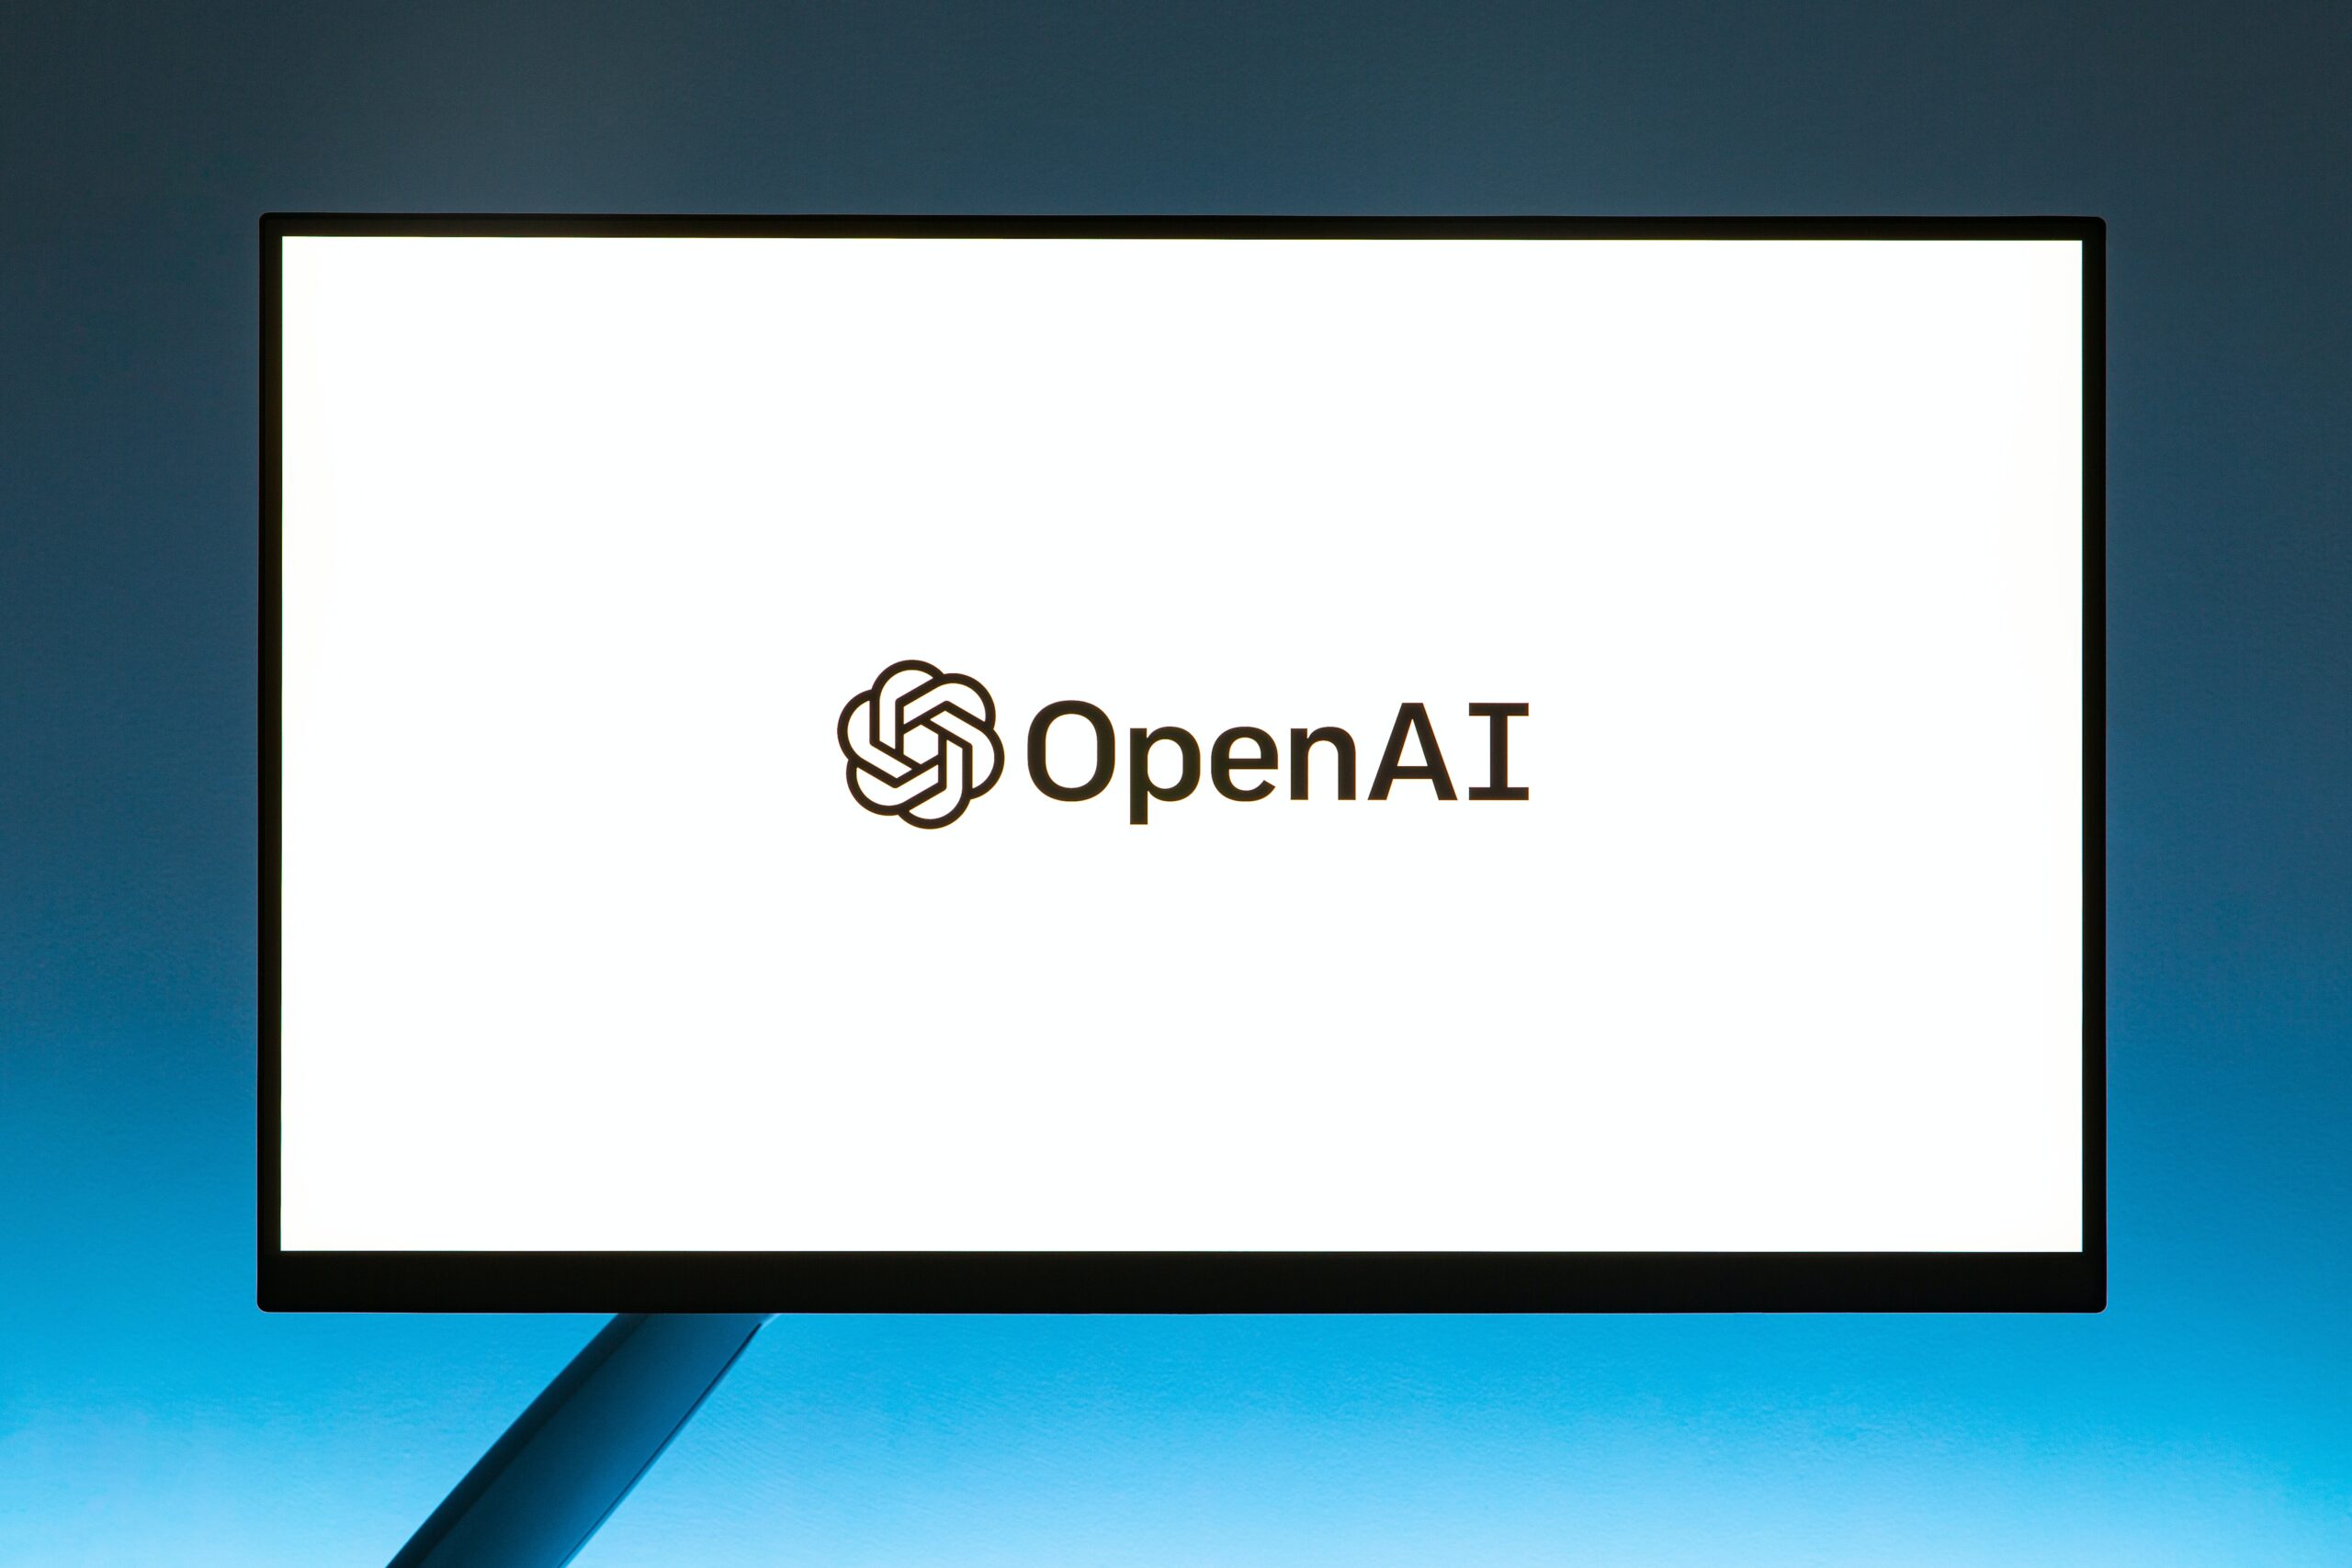 OpenAI tekst og logo